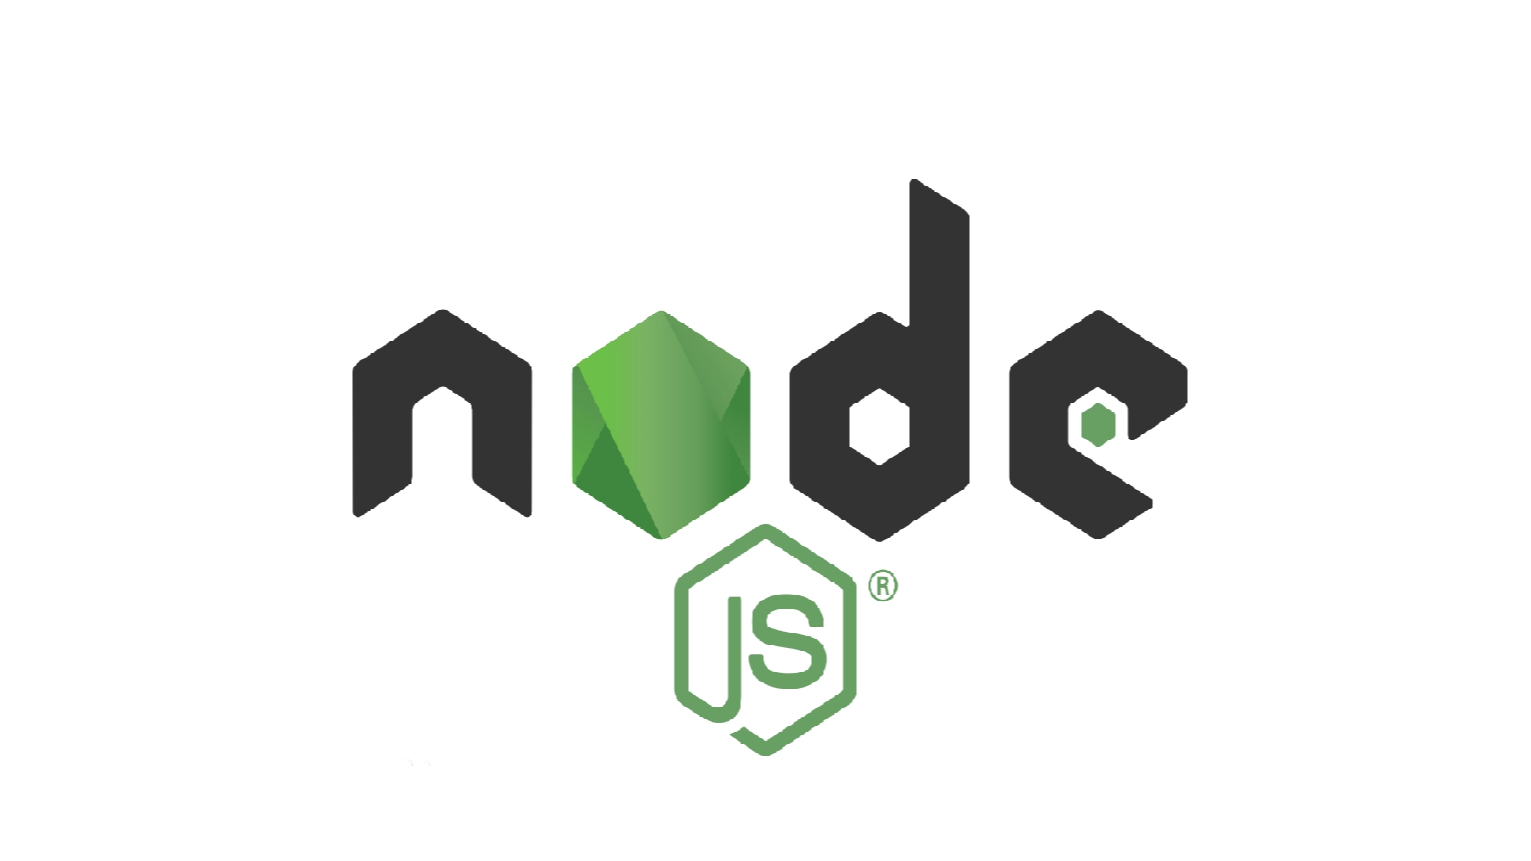 2024-07-17 搭建一个node+express服务器，并把静态资源部署到该服务器（本地开发）